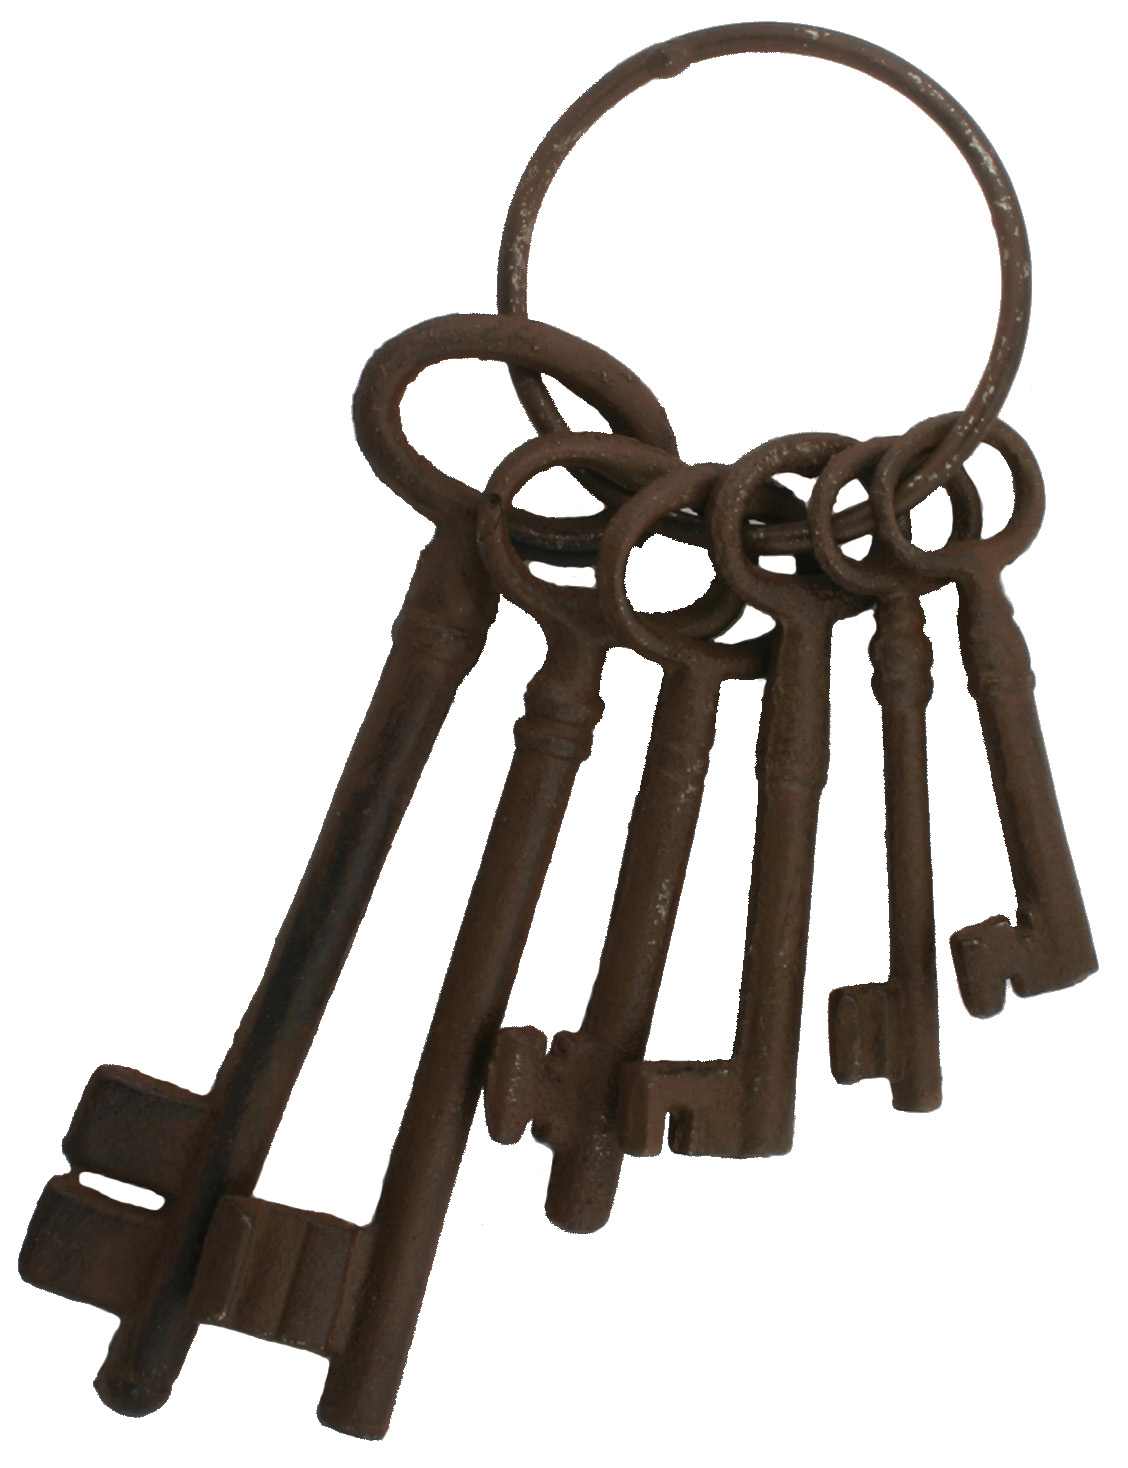 Vintage Keys Antique Skeleton Keys Old Metal Iron Keys 2 Set Old rusted Keys bunch of keys,